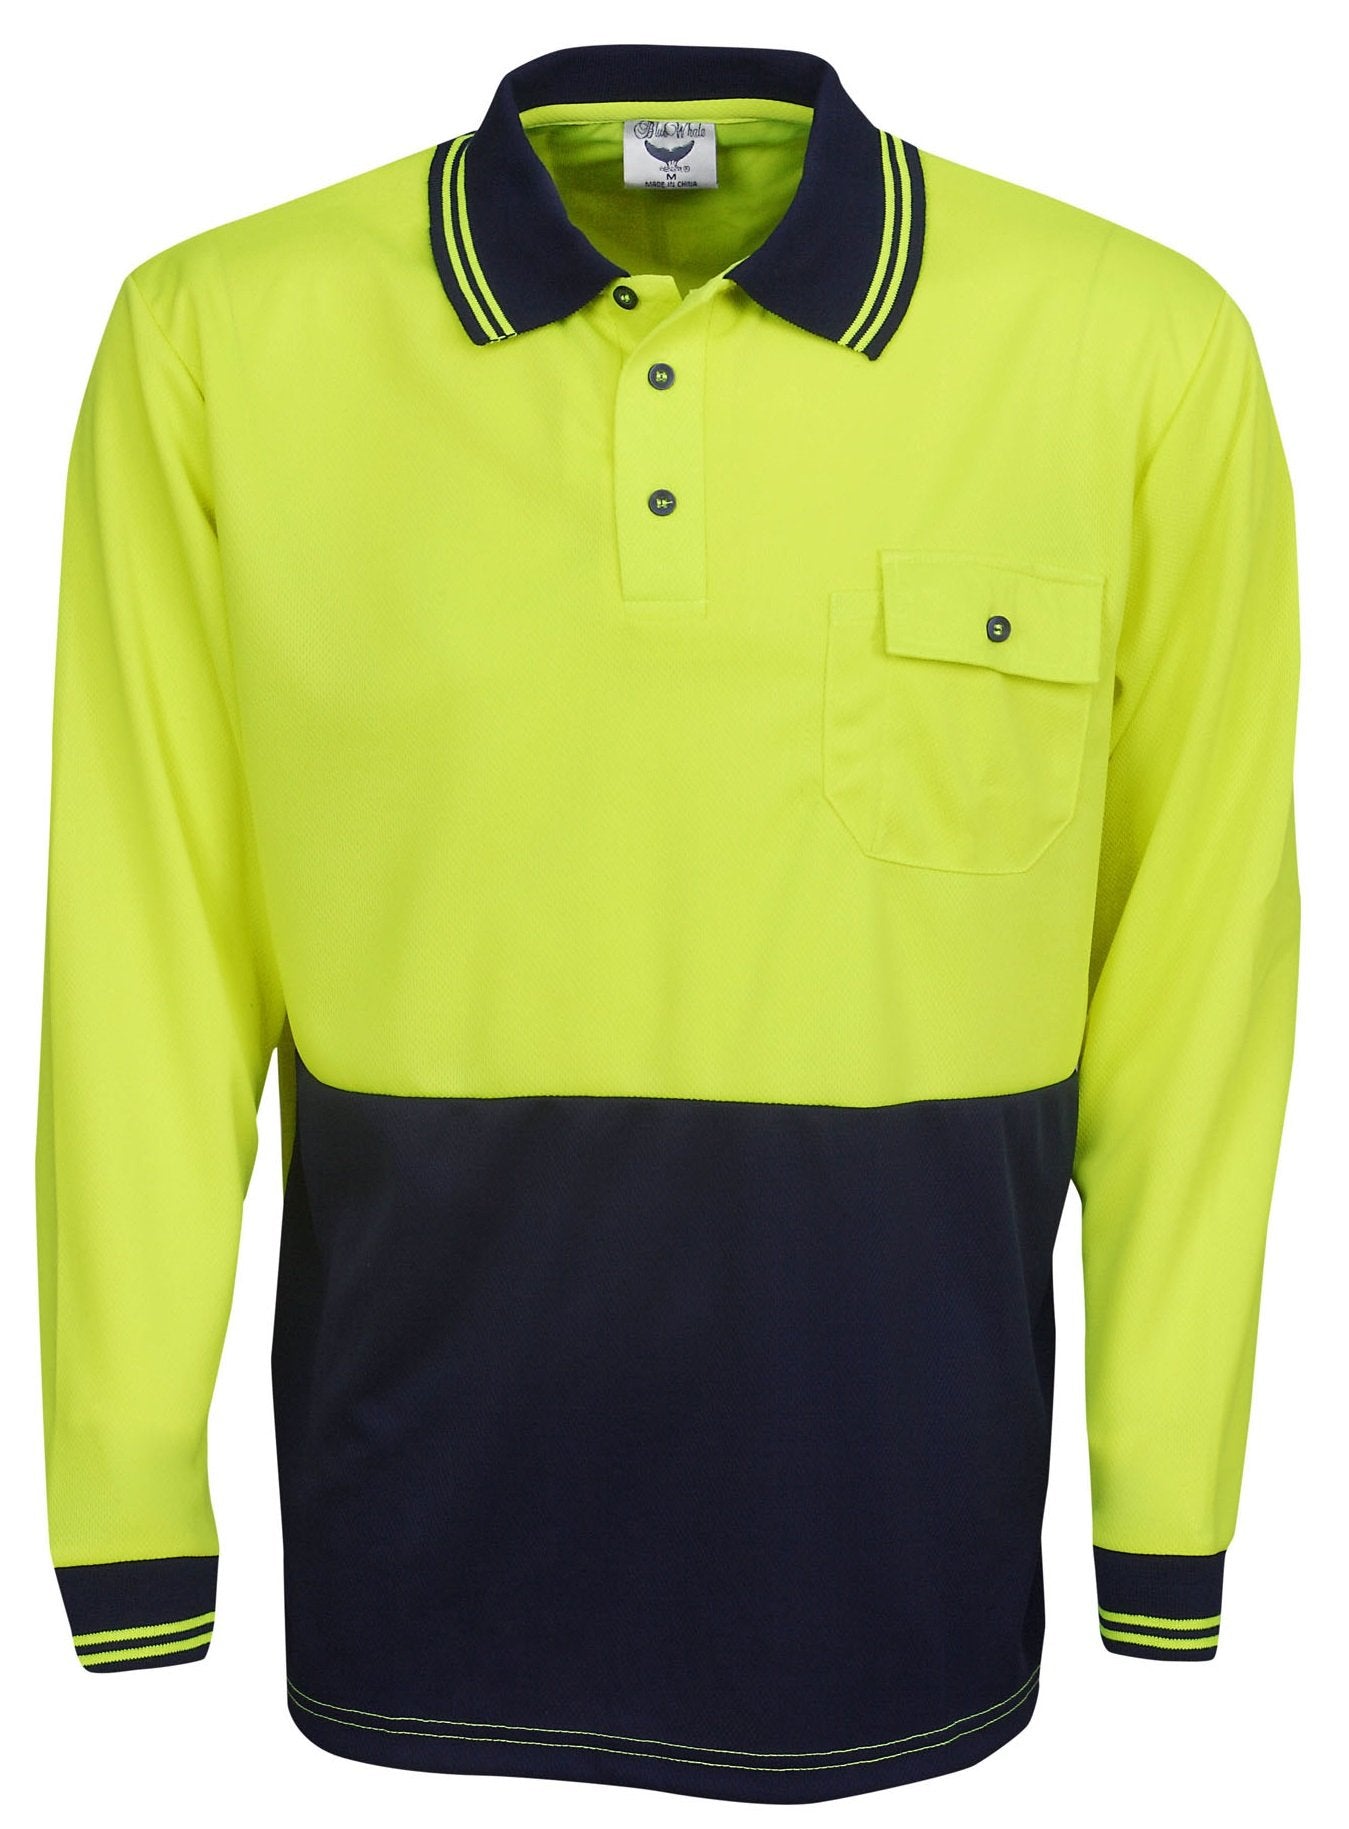 P81 L/S Hi Vis Cooldry Polo Shirt - Safe-T-Rex Workwear Pty Ltd